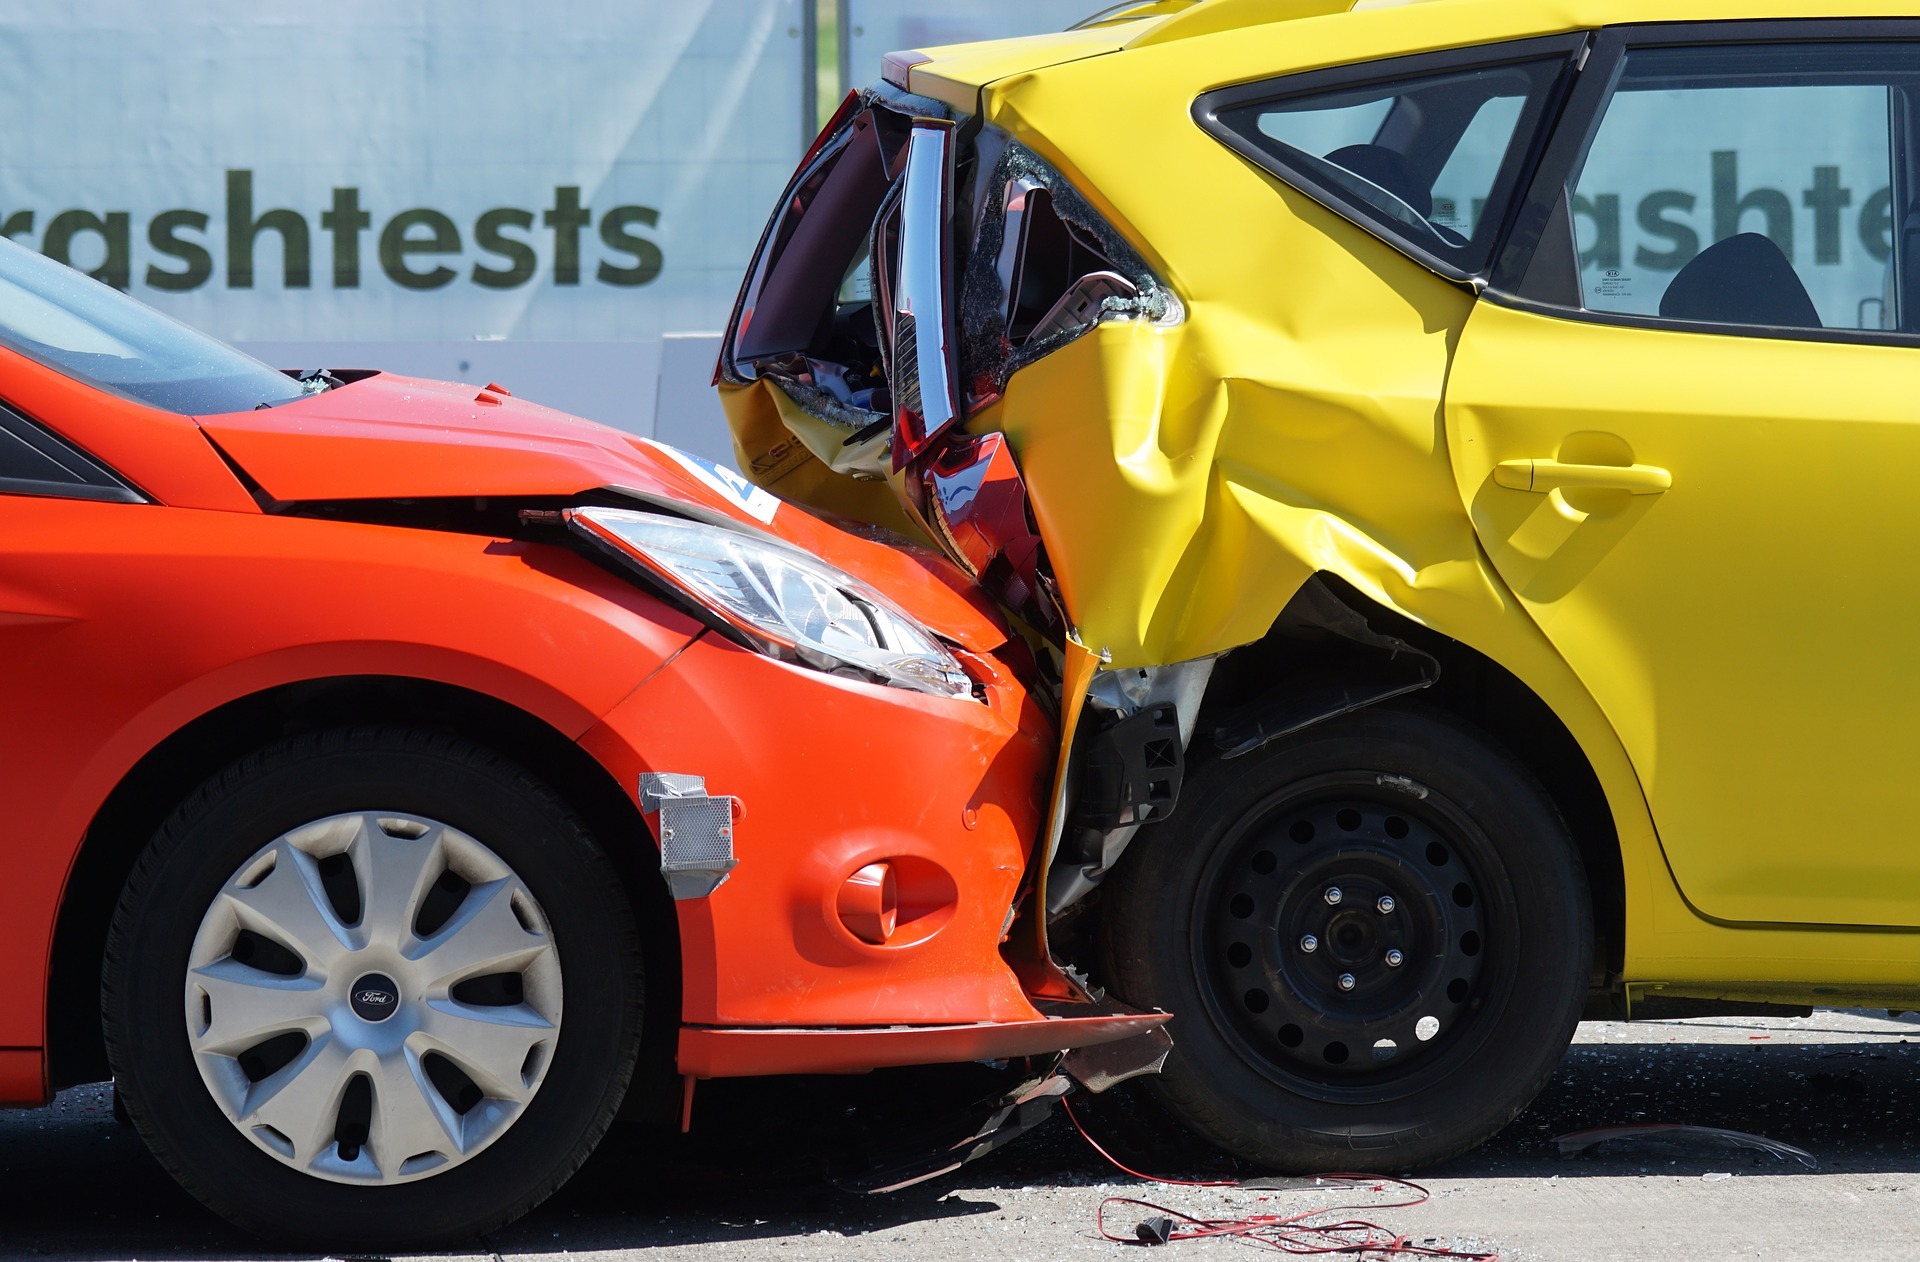 Asuransi Maybank melindungi kerugian atas kerusakan kendaraan, rumah, hingga keselamatan jiwa